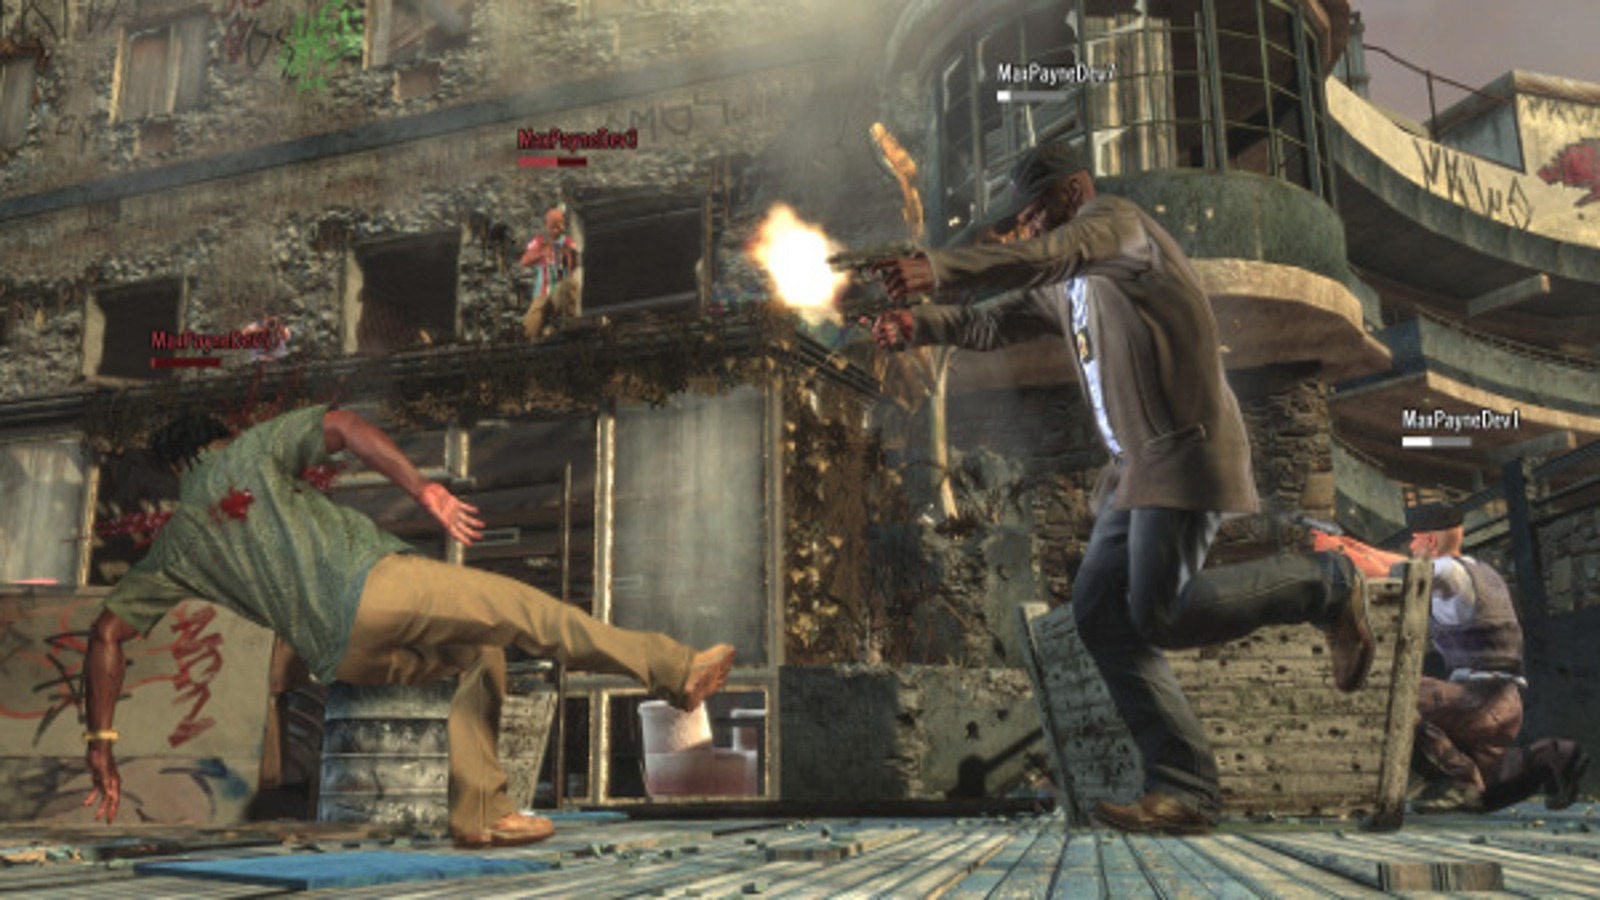 Max Payne 3 Português Pc Steam Key Código Digital